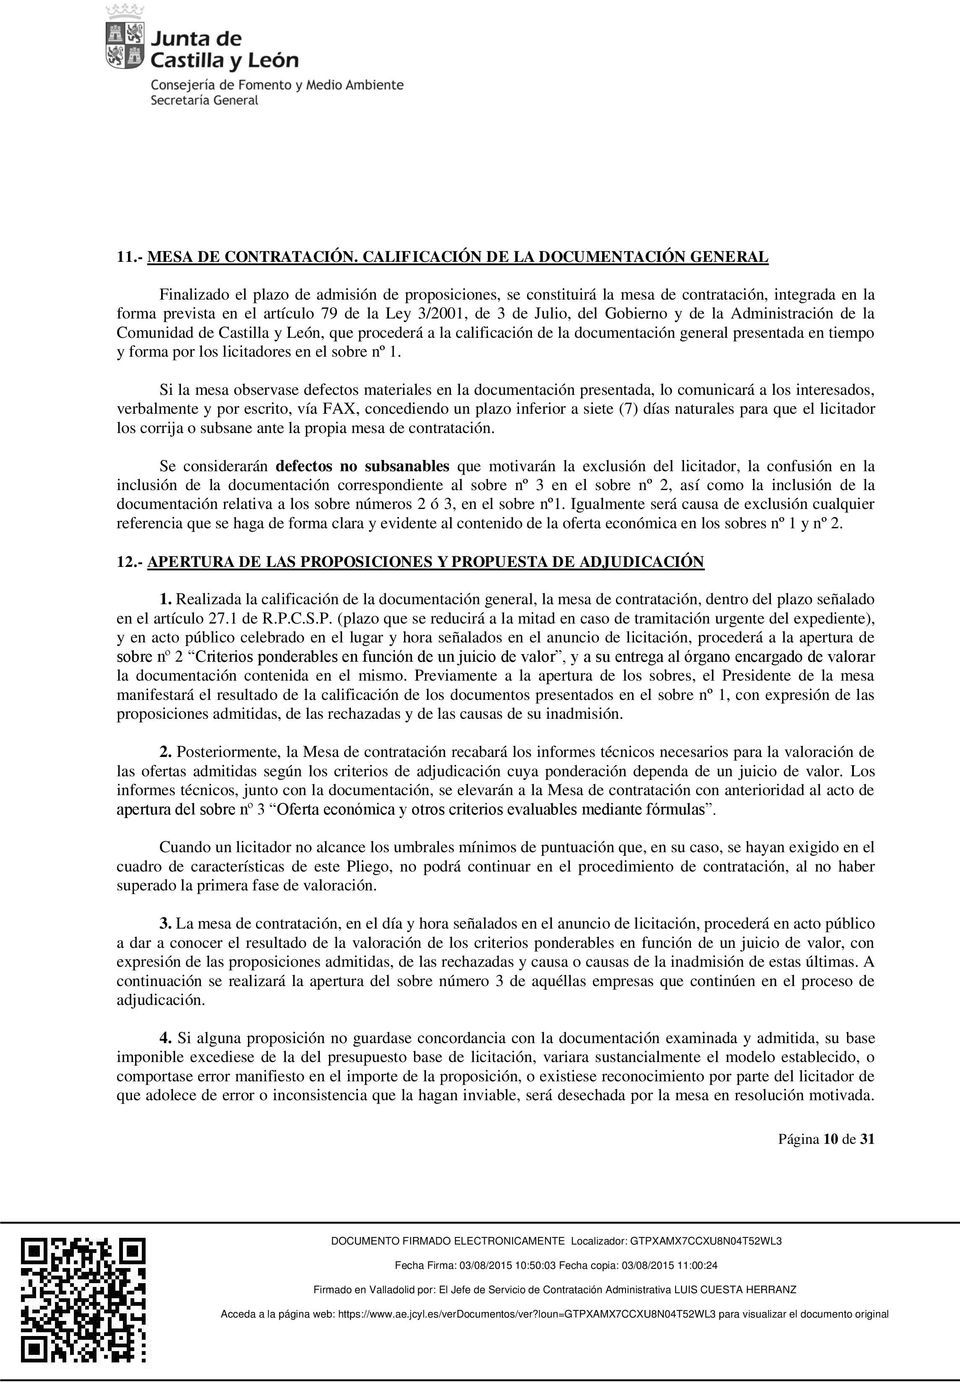 de 3 de Julio, del Gobierno y de la Administración de la Comunidad de Castilla y León, que procederá a la calificación de la documentación general presentada en tiempo y forma por los licitadores en